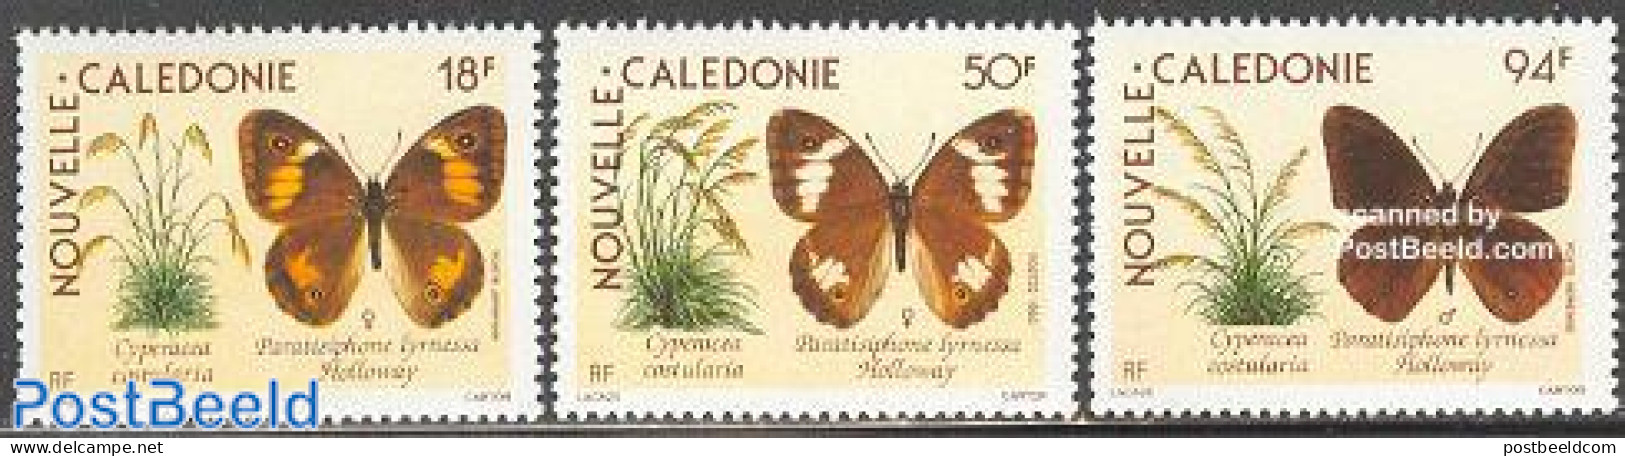 New Caledonia 1990 Butterflies 3v, Mint NH, Nature - Butterflies - Nuevos